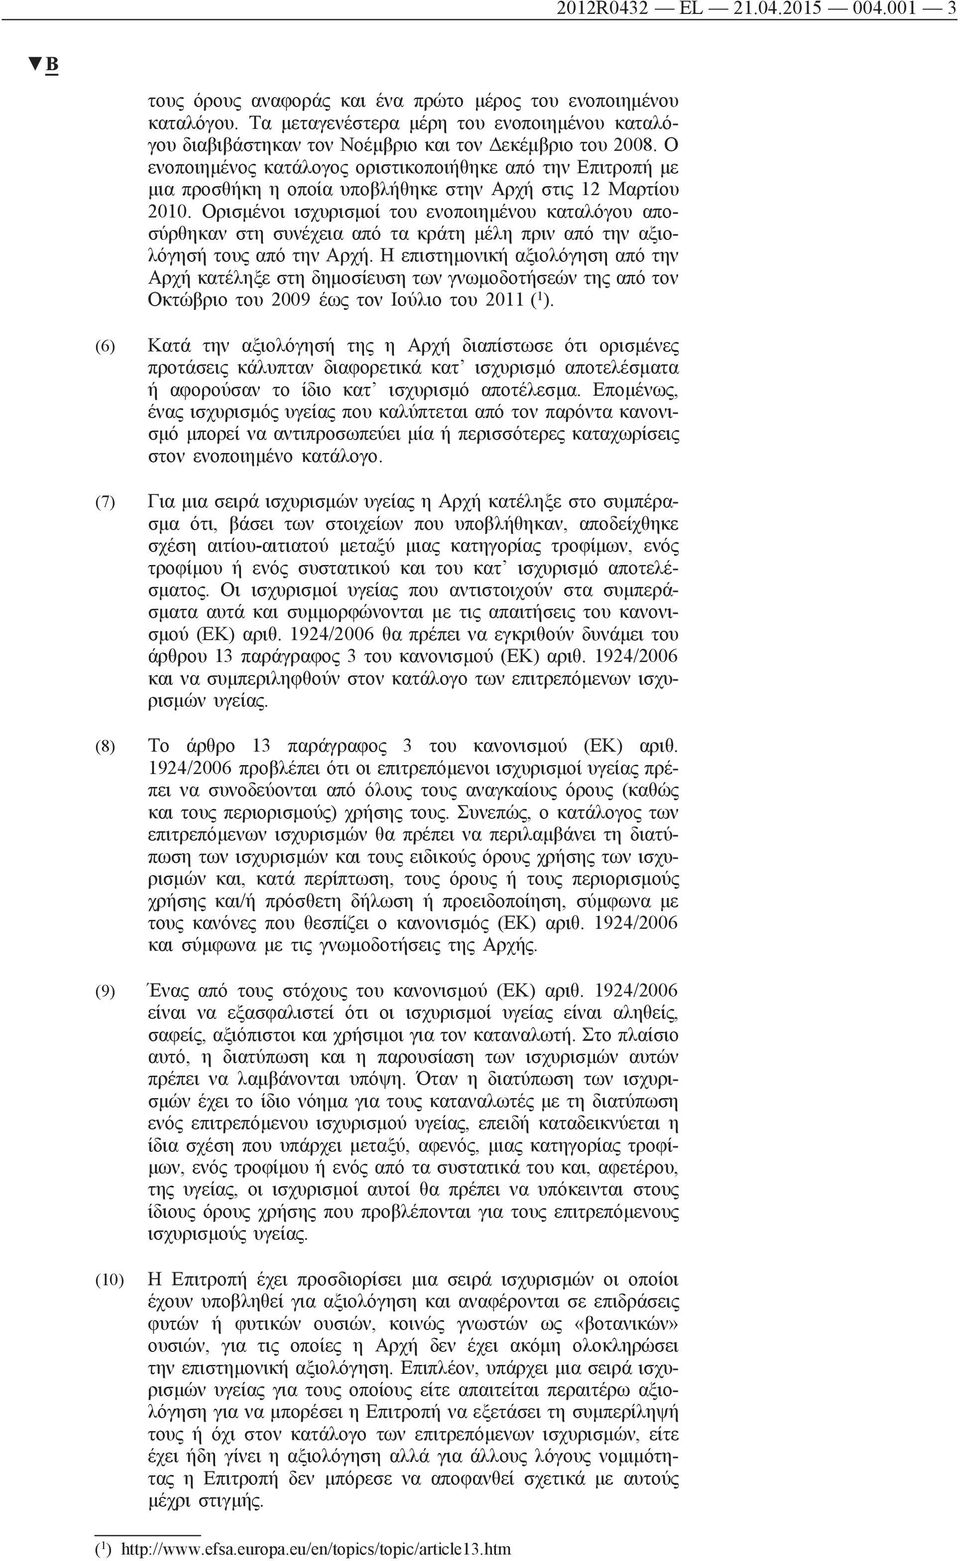 Ο ενοποιημένος κατάλογος οριστικοποιήθηκε από την Επιτροπή με μια προσθήκη η οποία υποβλήθηκε στην Αρχή στις 12 Μαρτίου 2010.